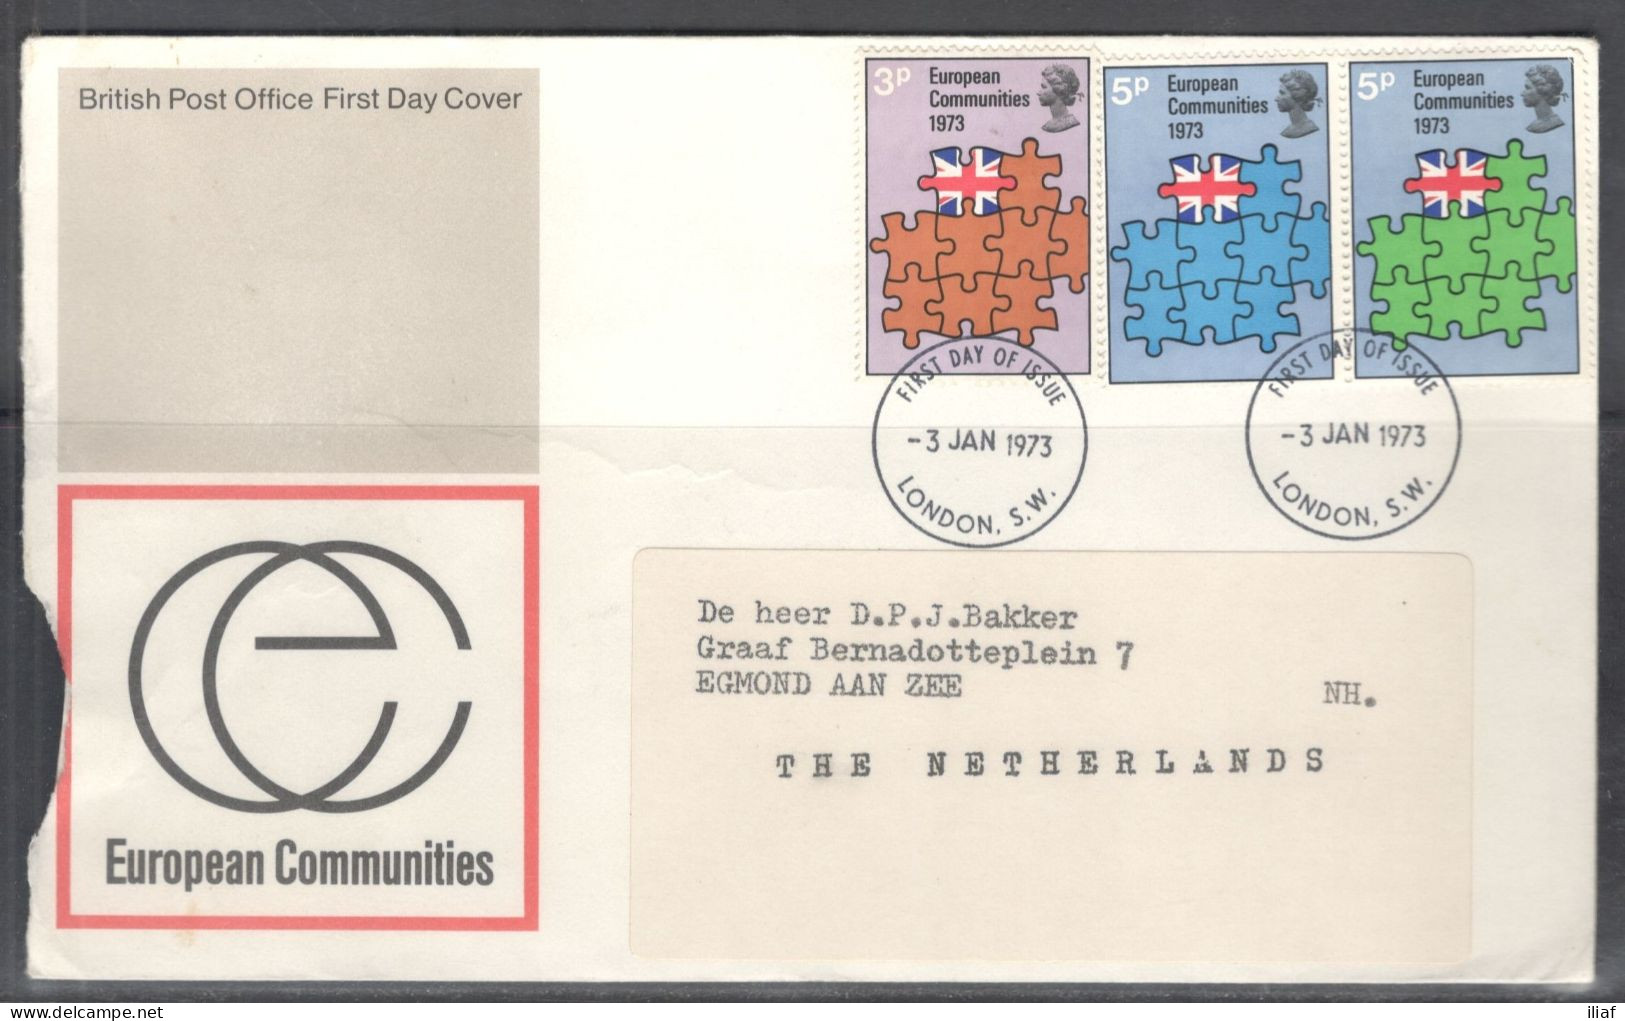 United Kingdom Of Great Britain.  FDC Sc. 685-687.  Britain's Entry Into EEC.  FDC Cancellation On FDC Envelope - 1971-80 Ediciones Decimal